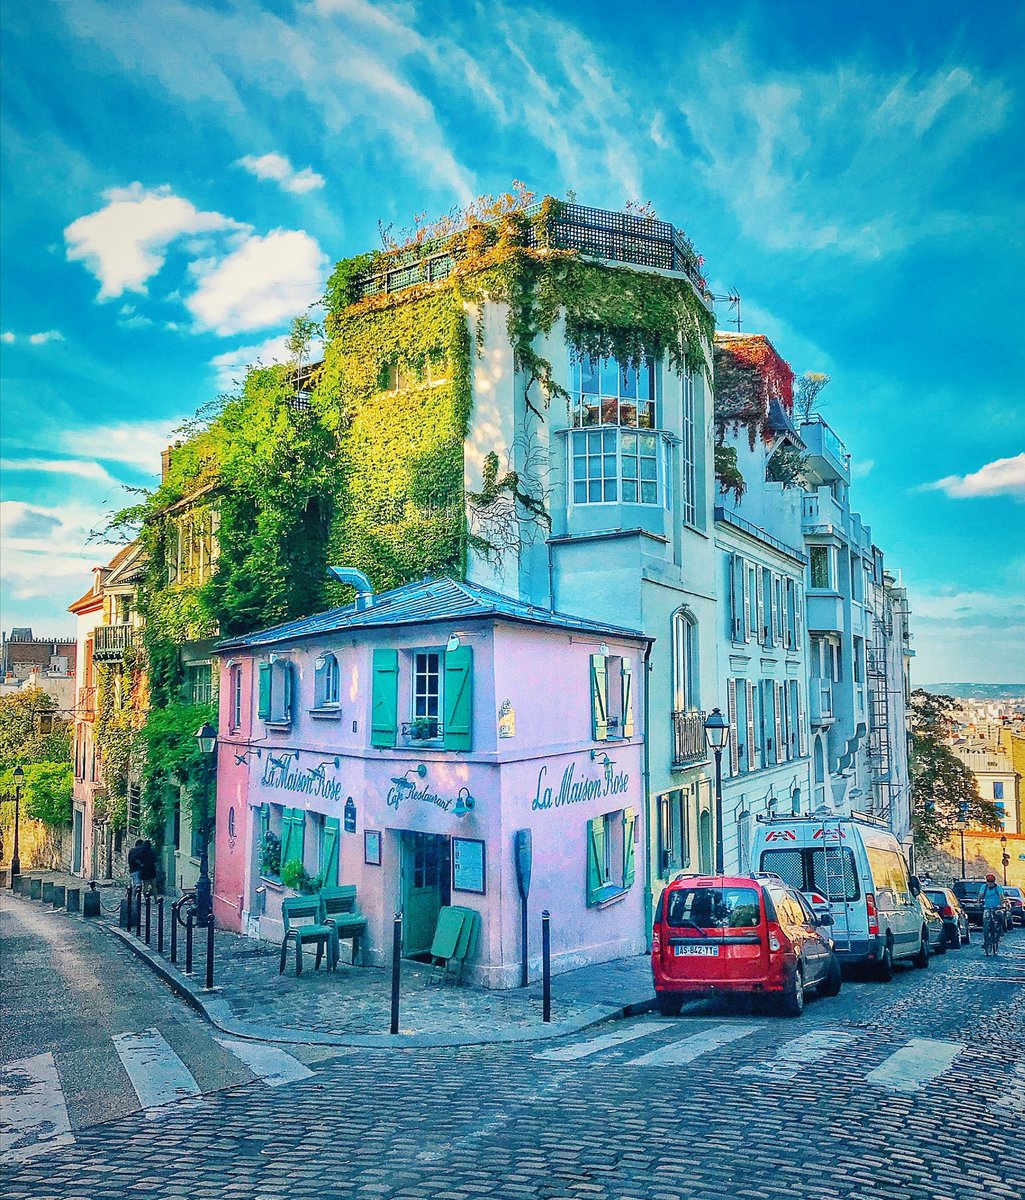 La maison rose de Montmartre ☺️
#montmartre #Paris #paristourism #balade #promenade #maisonrose #soleil #sun #Food #photography #photooftheday #colors